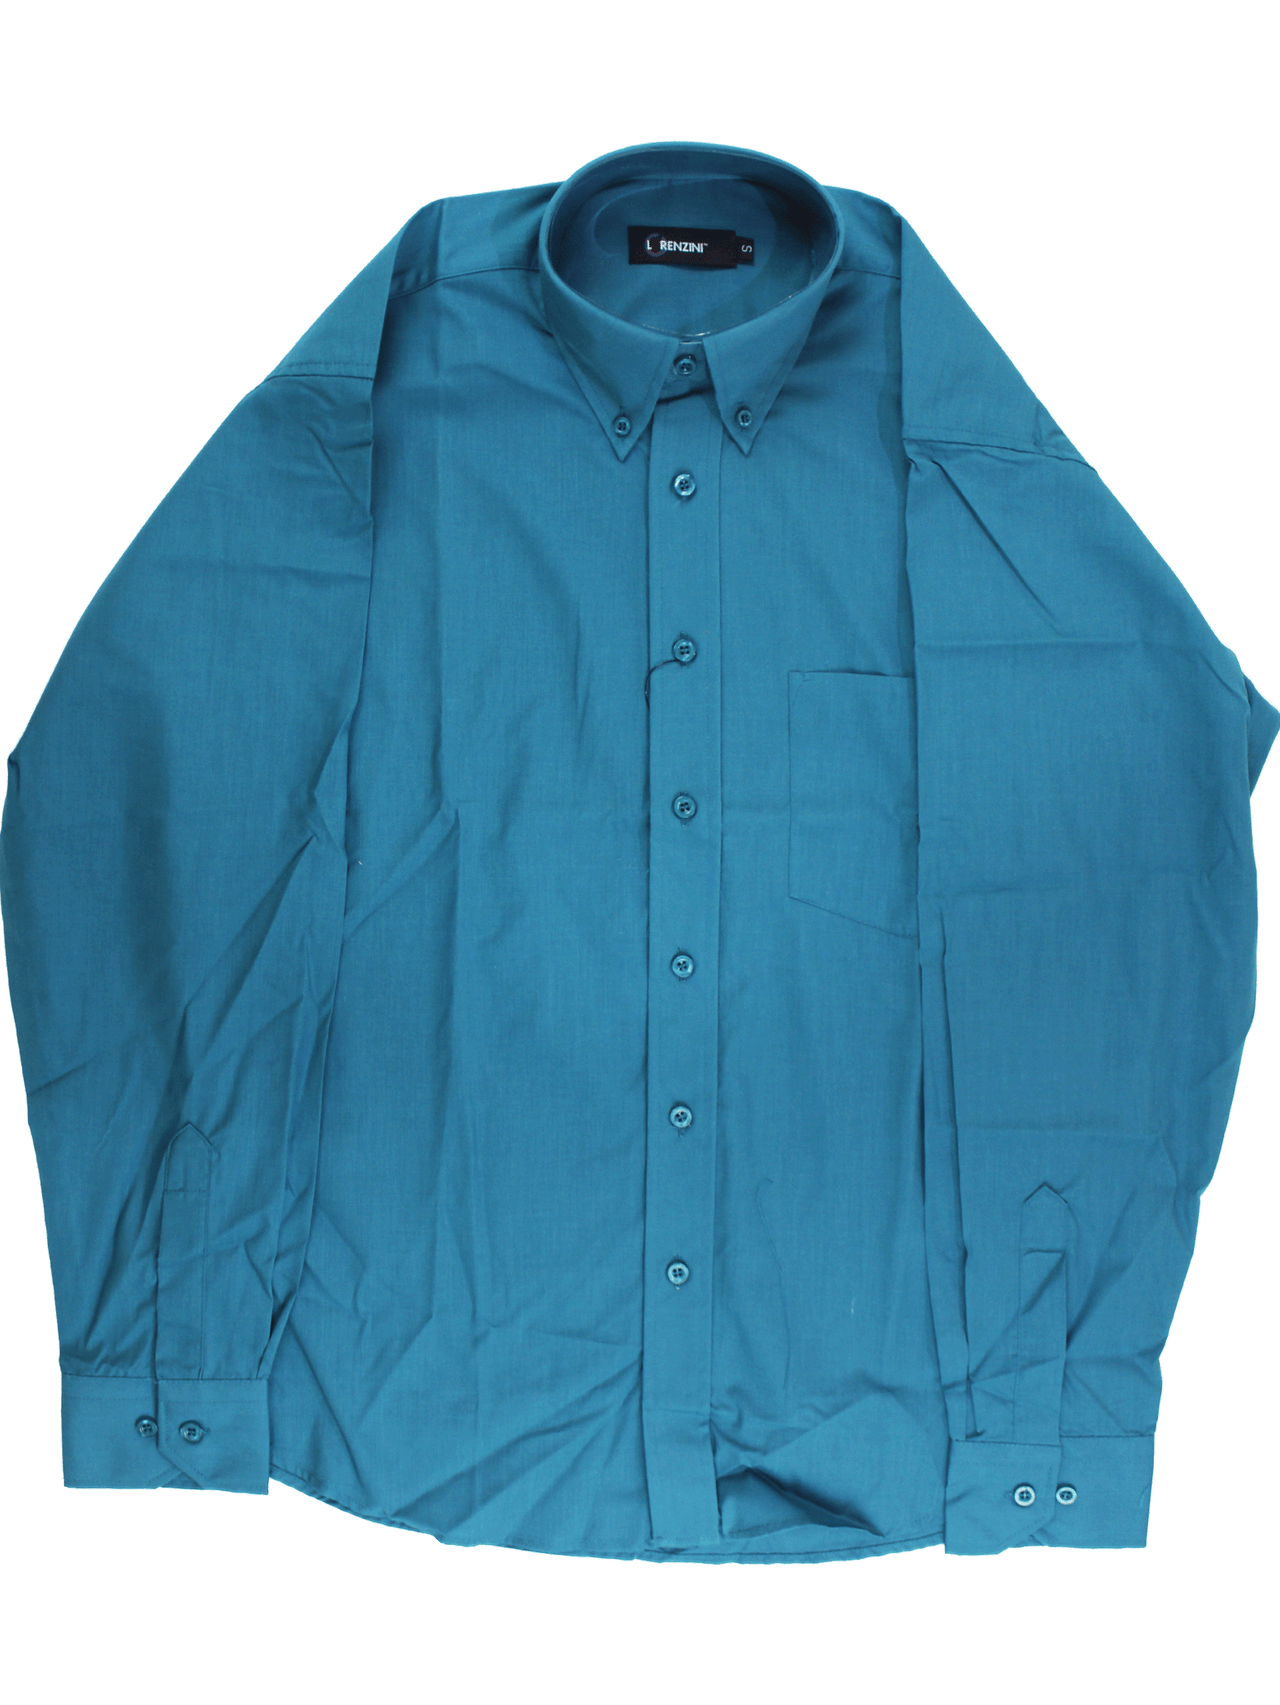 LORENZINI Turquoise L/S Shirt